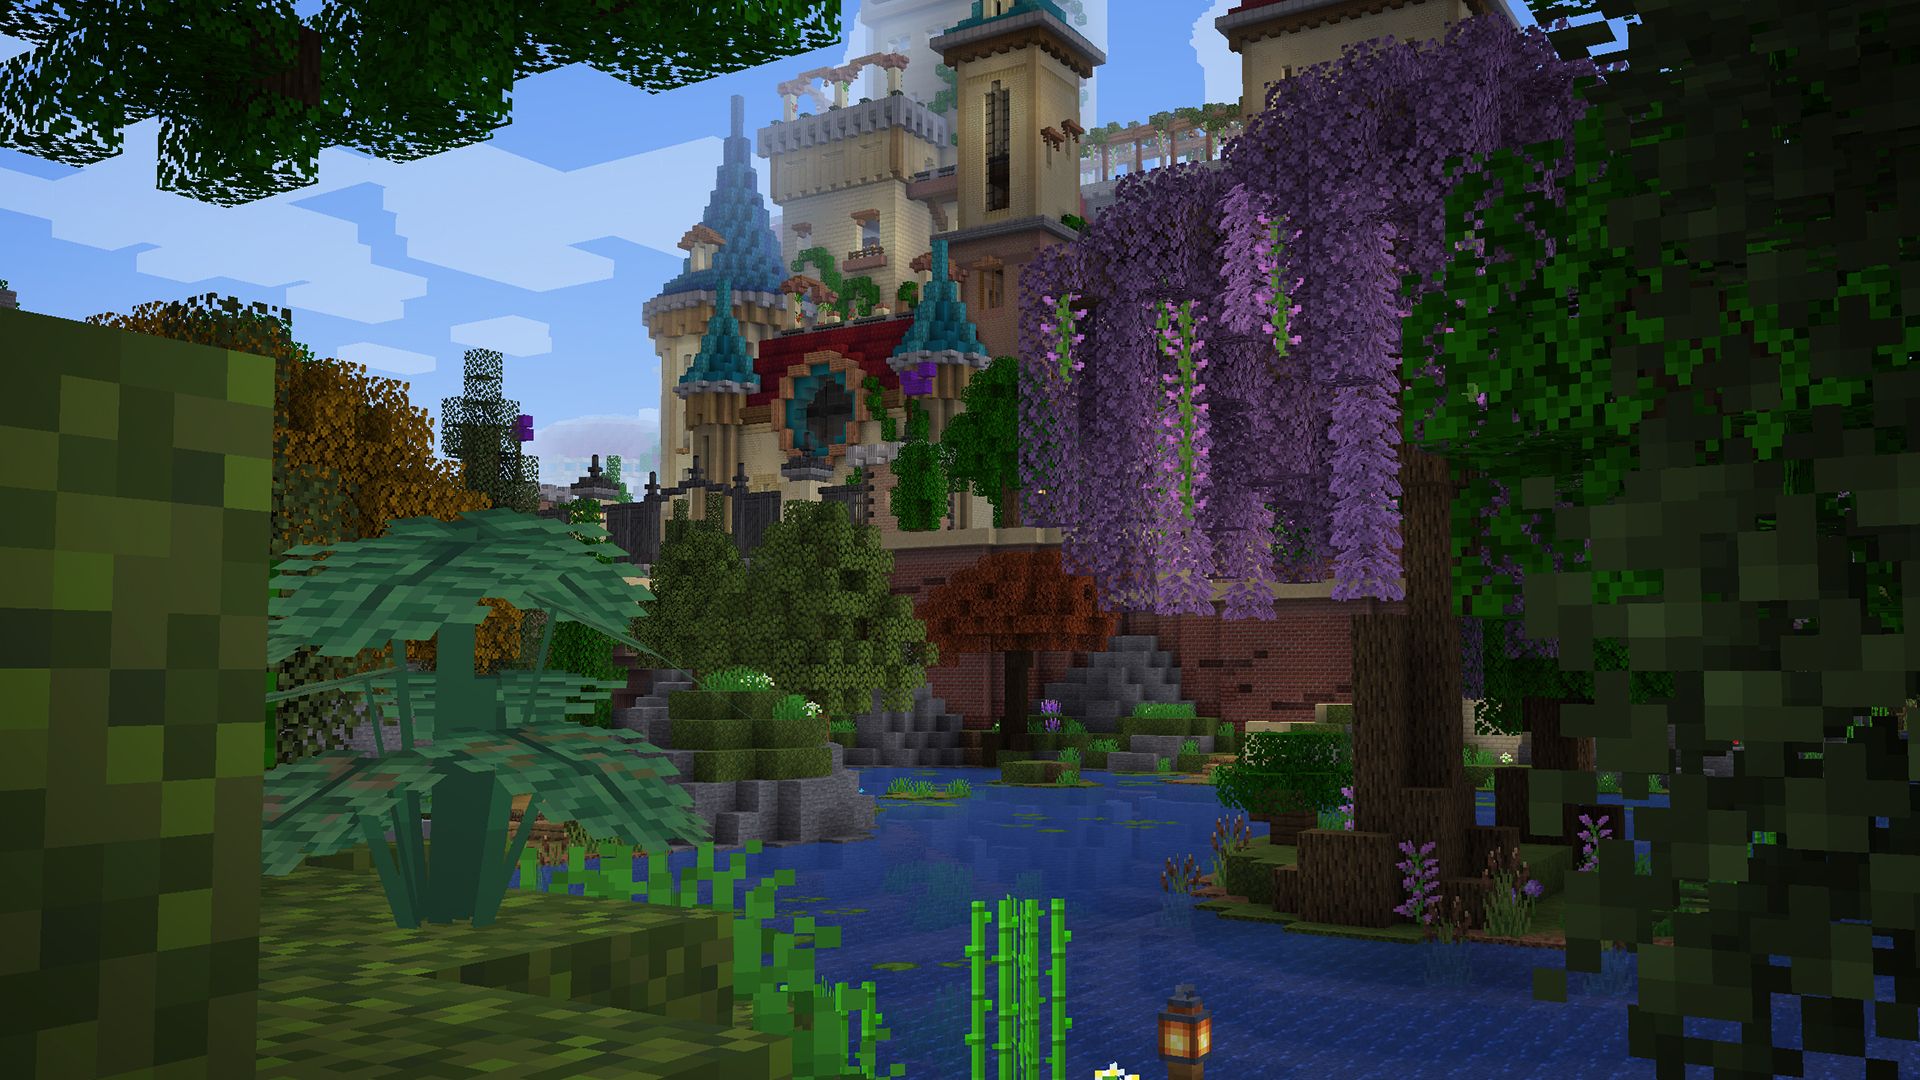 A Minecraft screenshot. A break in green foliage reveals a large ornate castle.